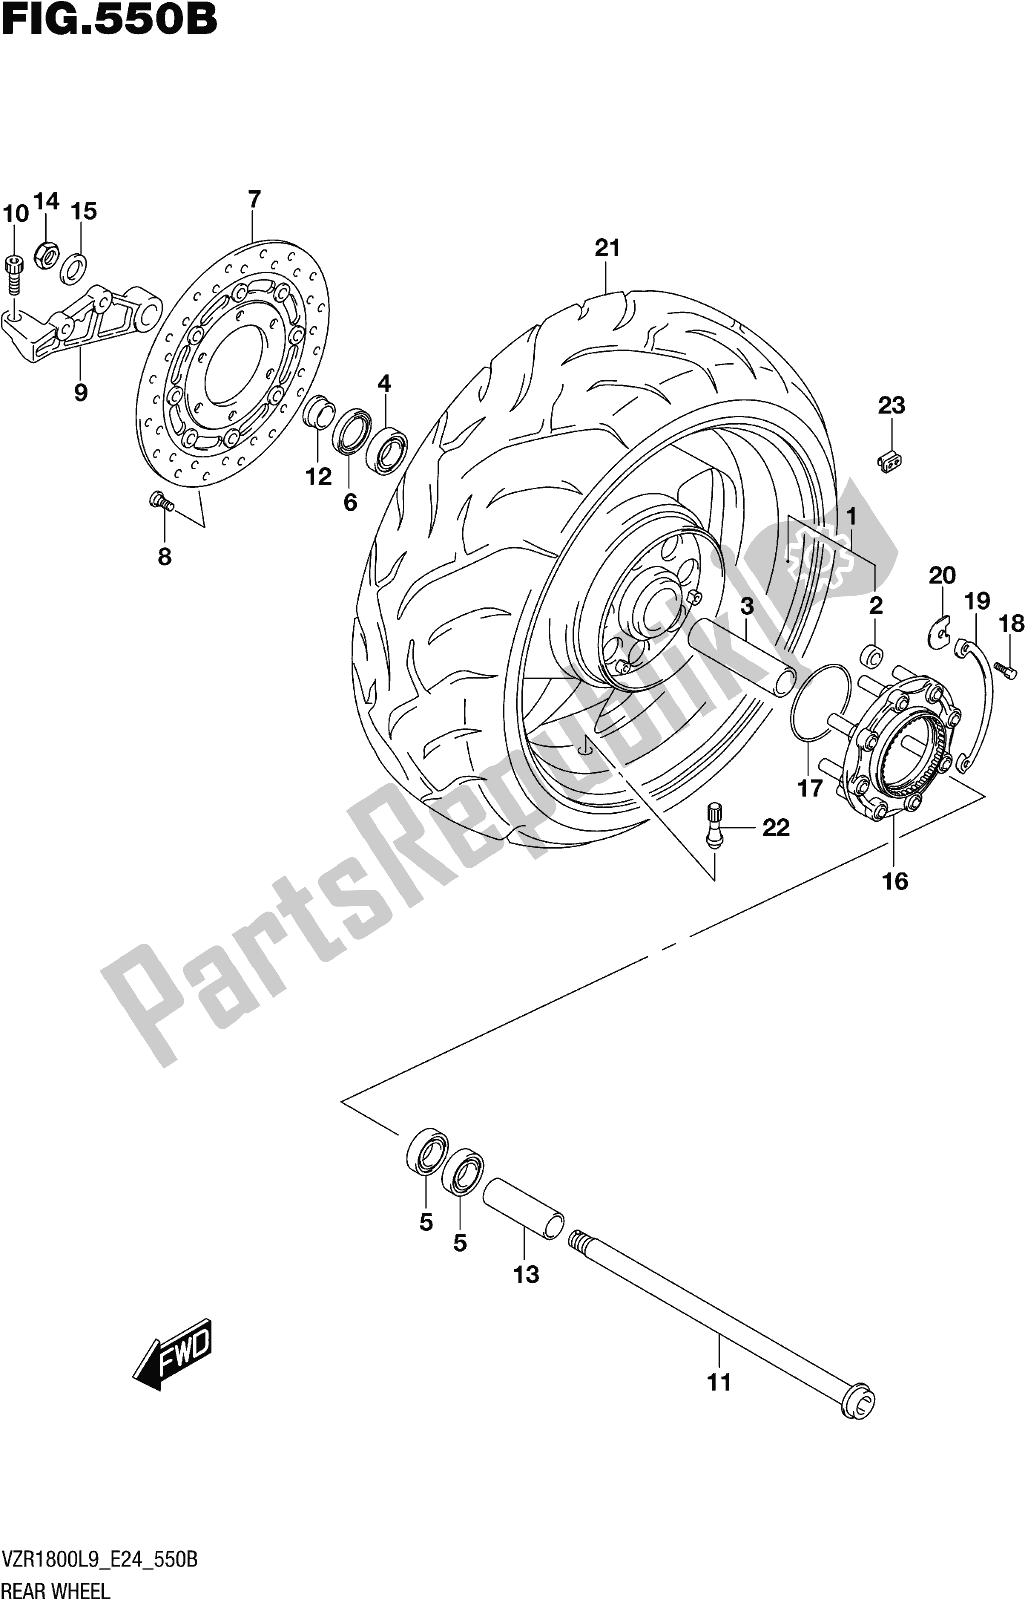 Toutes les pièces pour le Fig. 550b Rear Wheel (vzr1800bzl9 E24) du Suzuki VZR 1800 BZ 2019